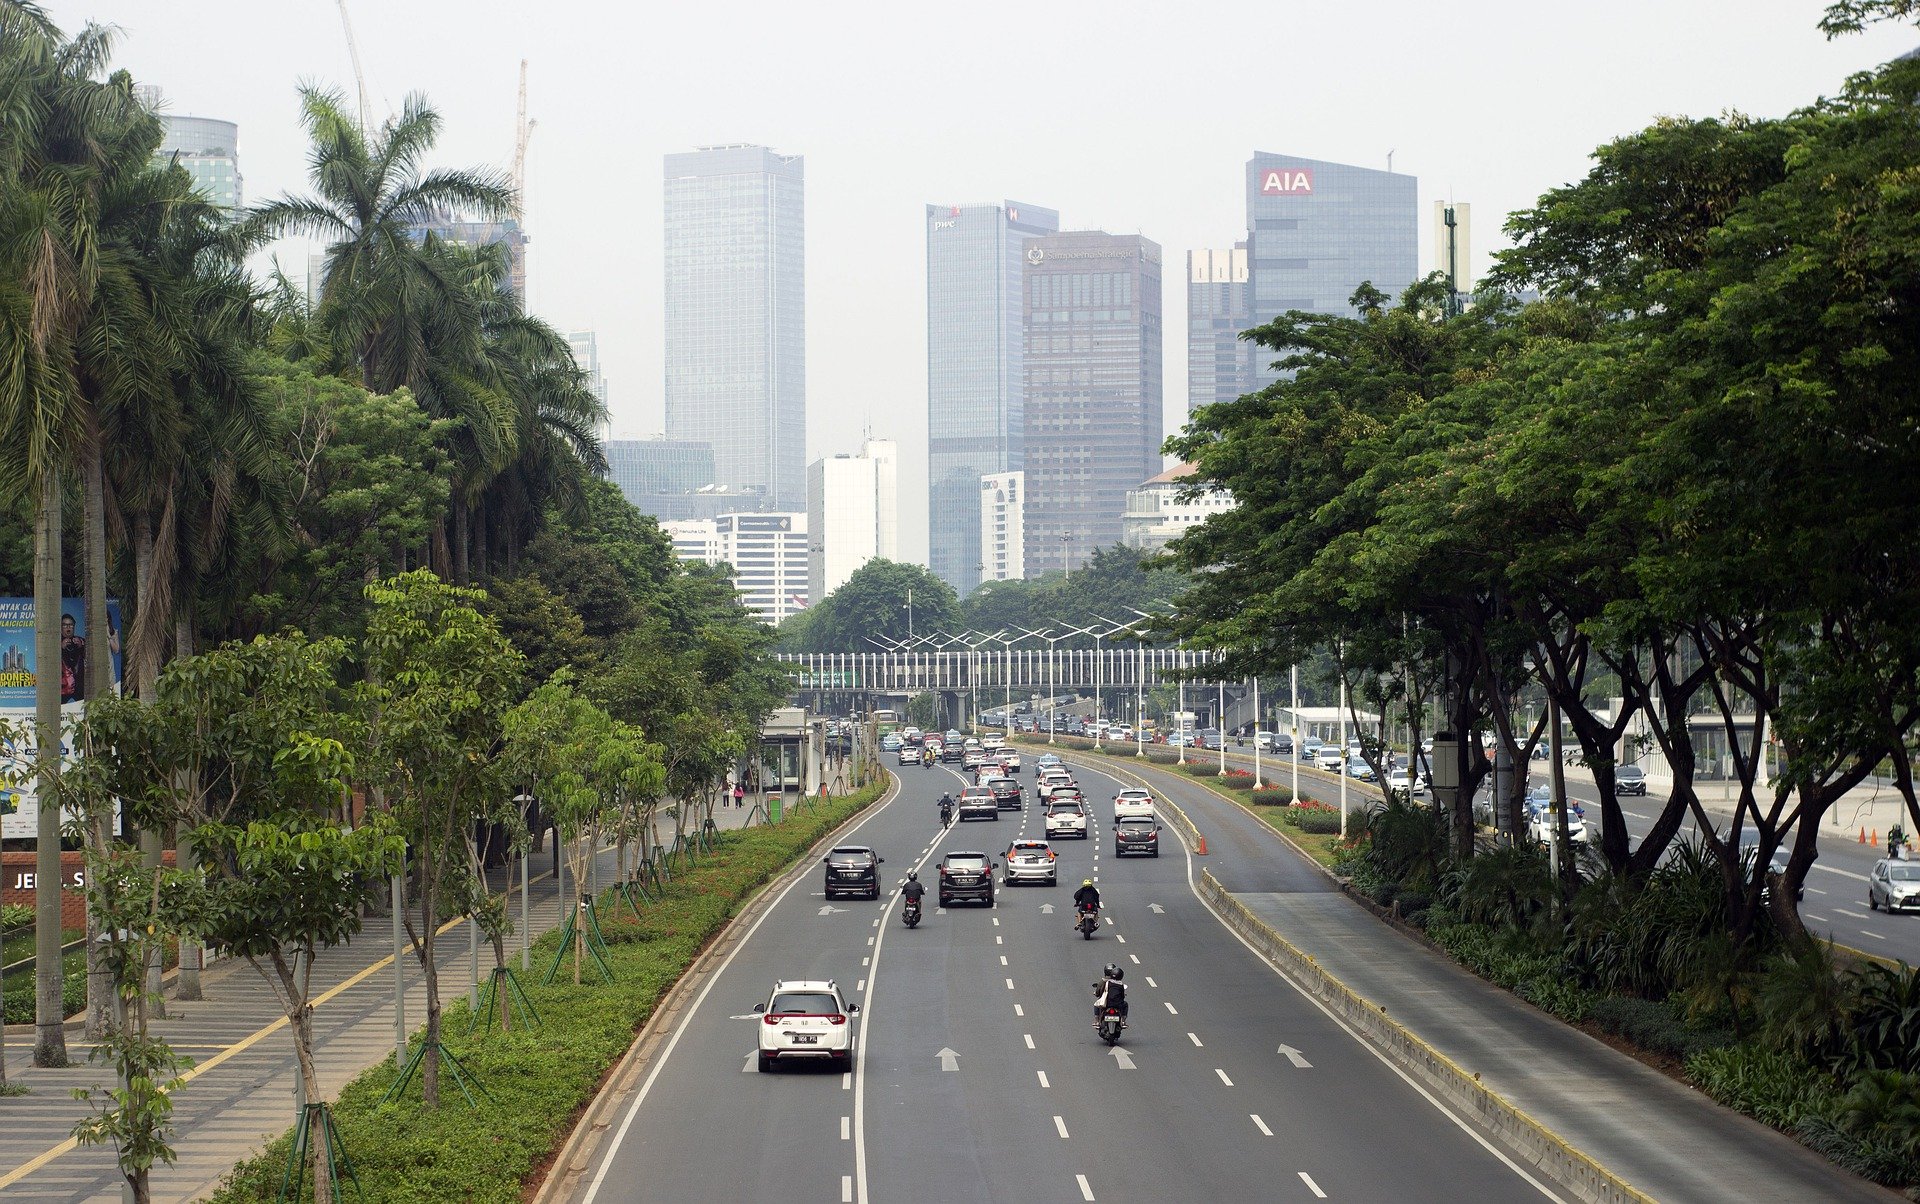 99 из 100 городов с экологией под наибольшей угрозой находятся в Азии